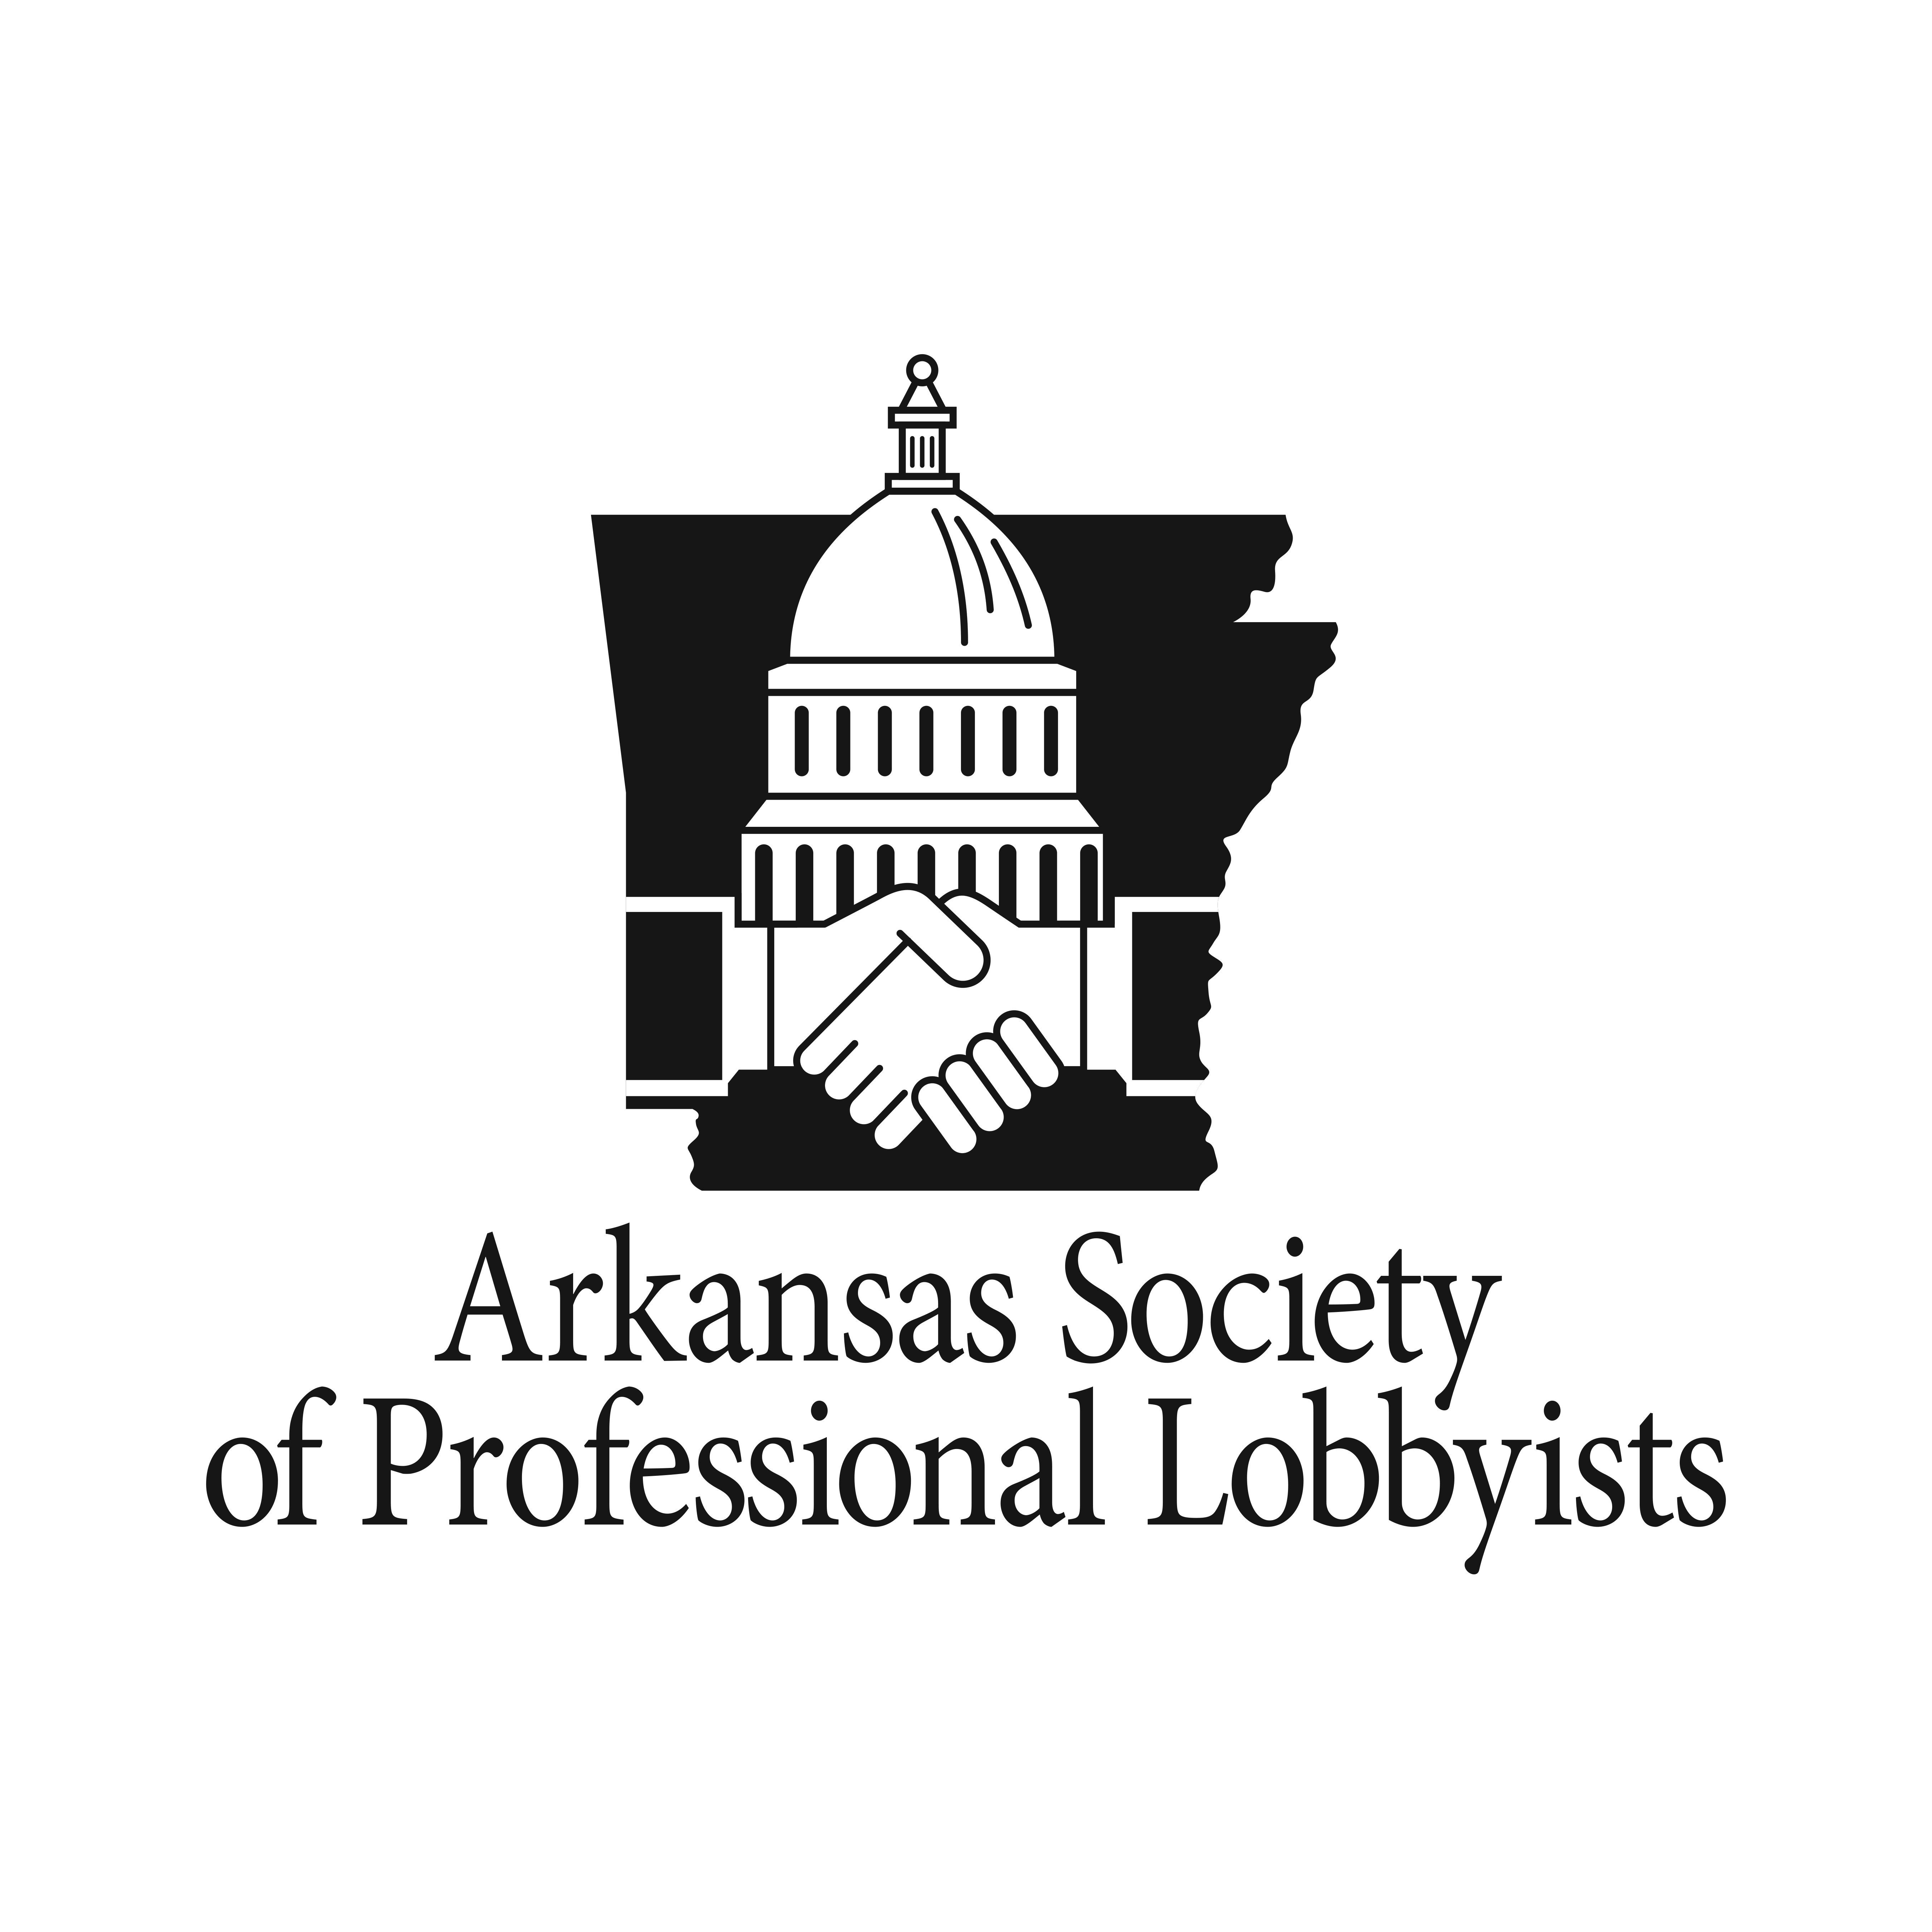 Arkansas Society of Professional Lobbyists